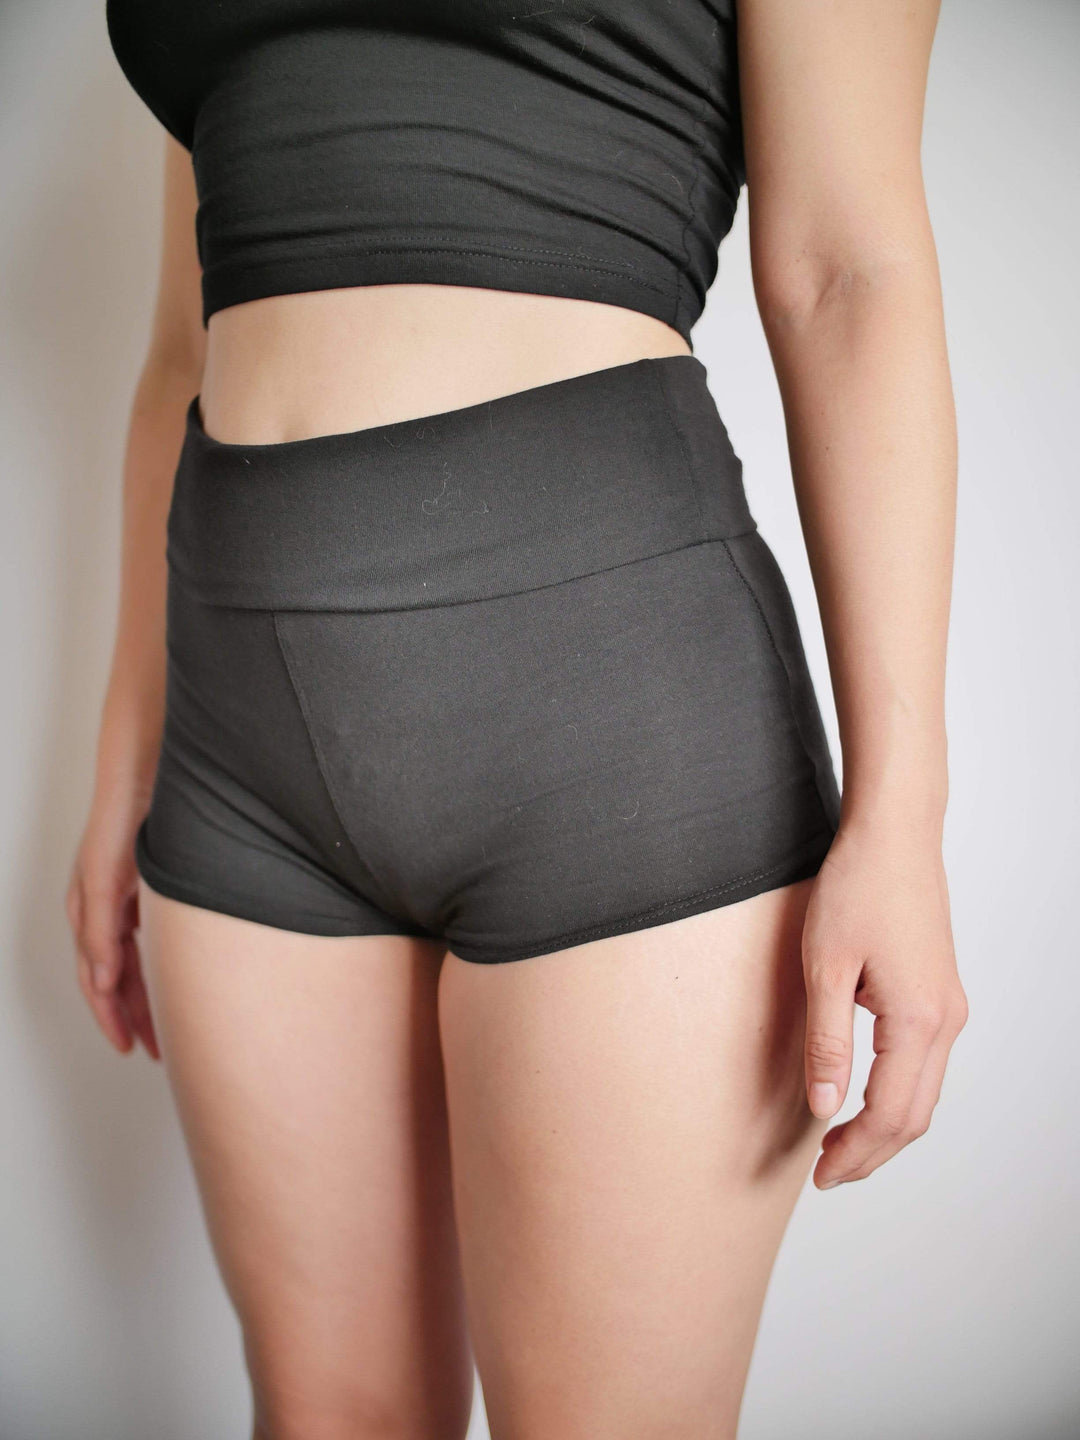 PixelThat Punderwear Yoga Shorts I'll Make You Grow Yoga Shorts/Pants